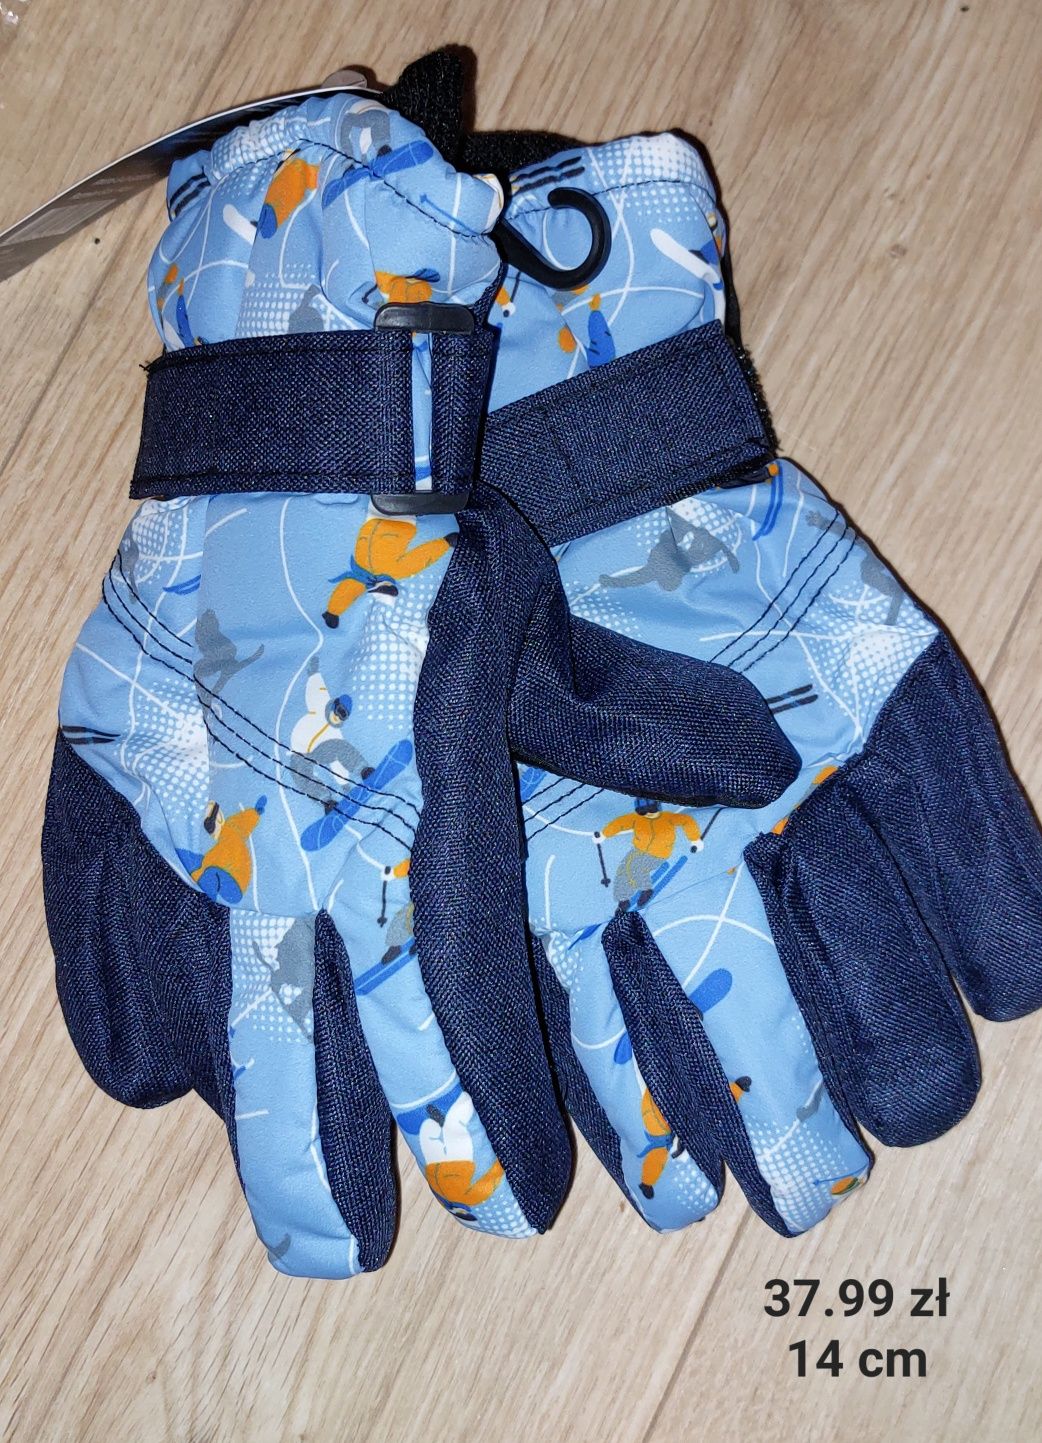 Rękawiczki zimowe narciarskie 5 palczaste - rozmiar 14 cm